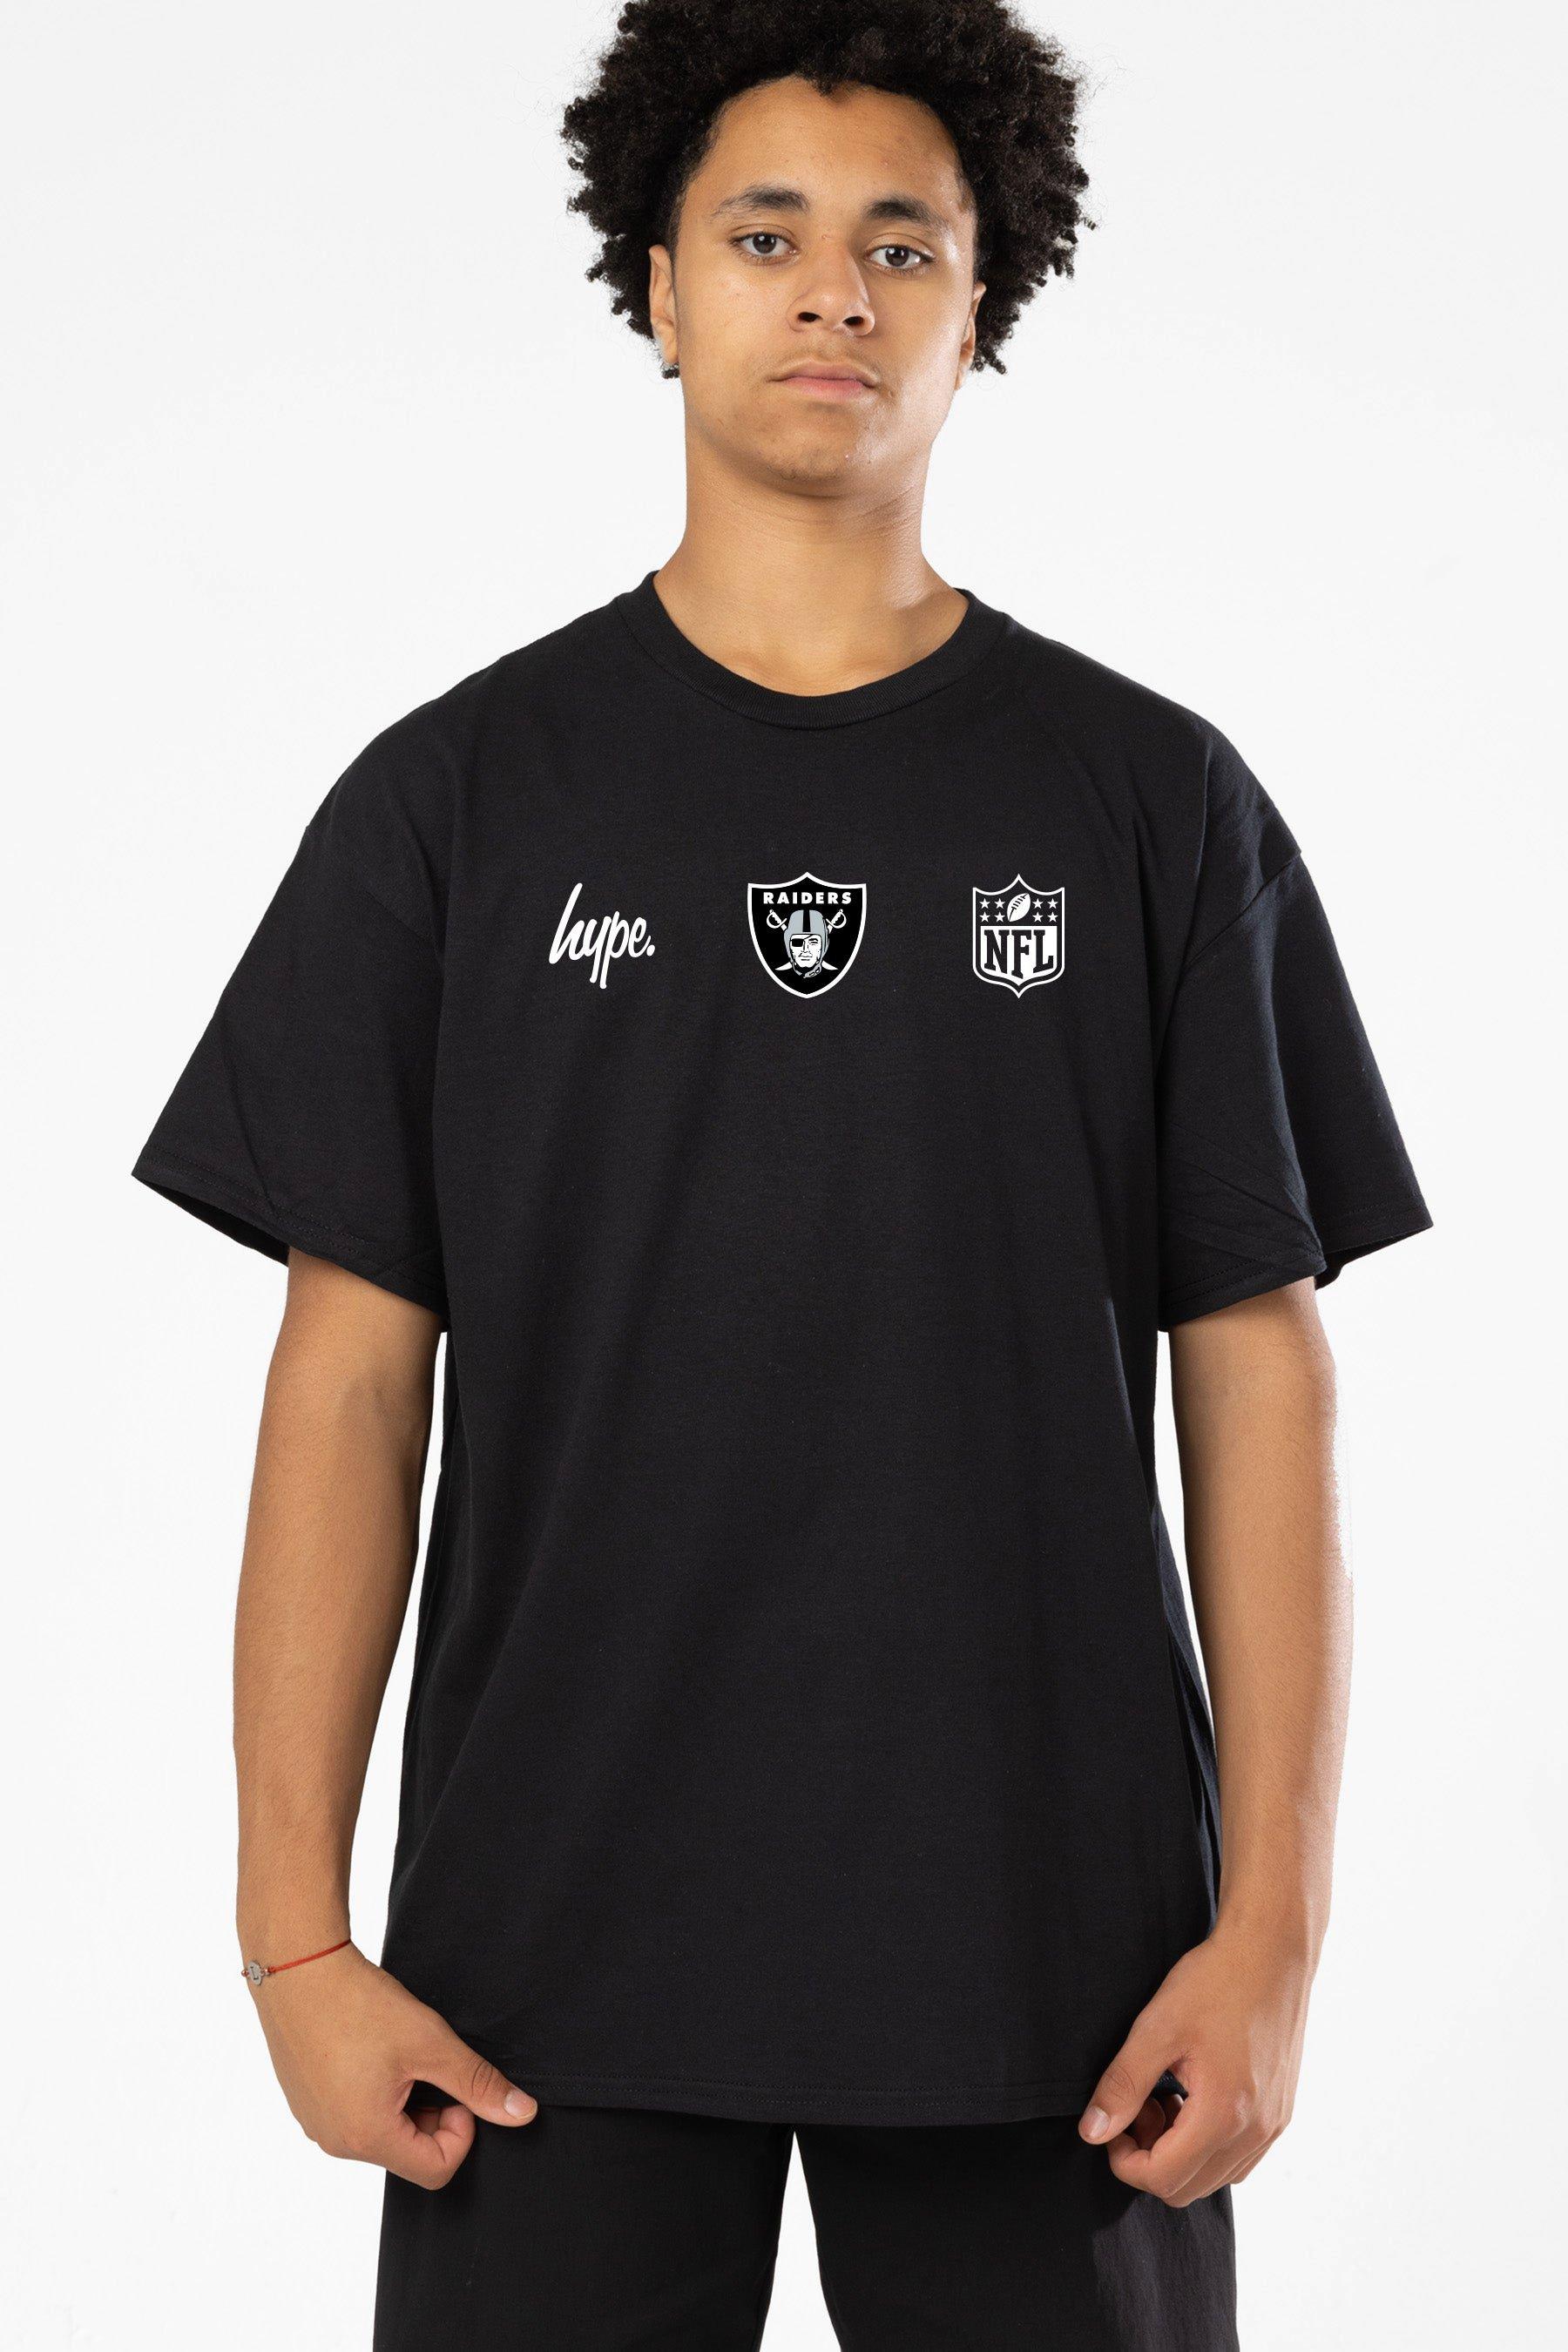 NFL X Las Vegas Raiders T-Shirt